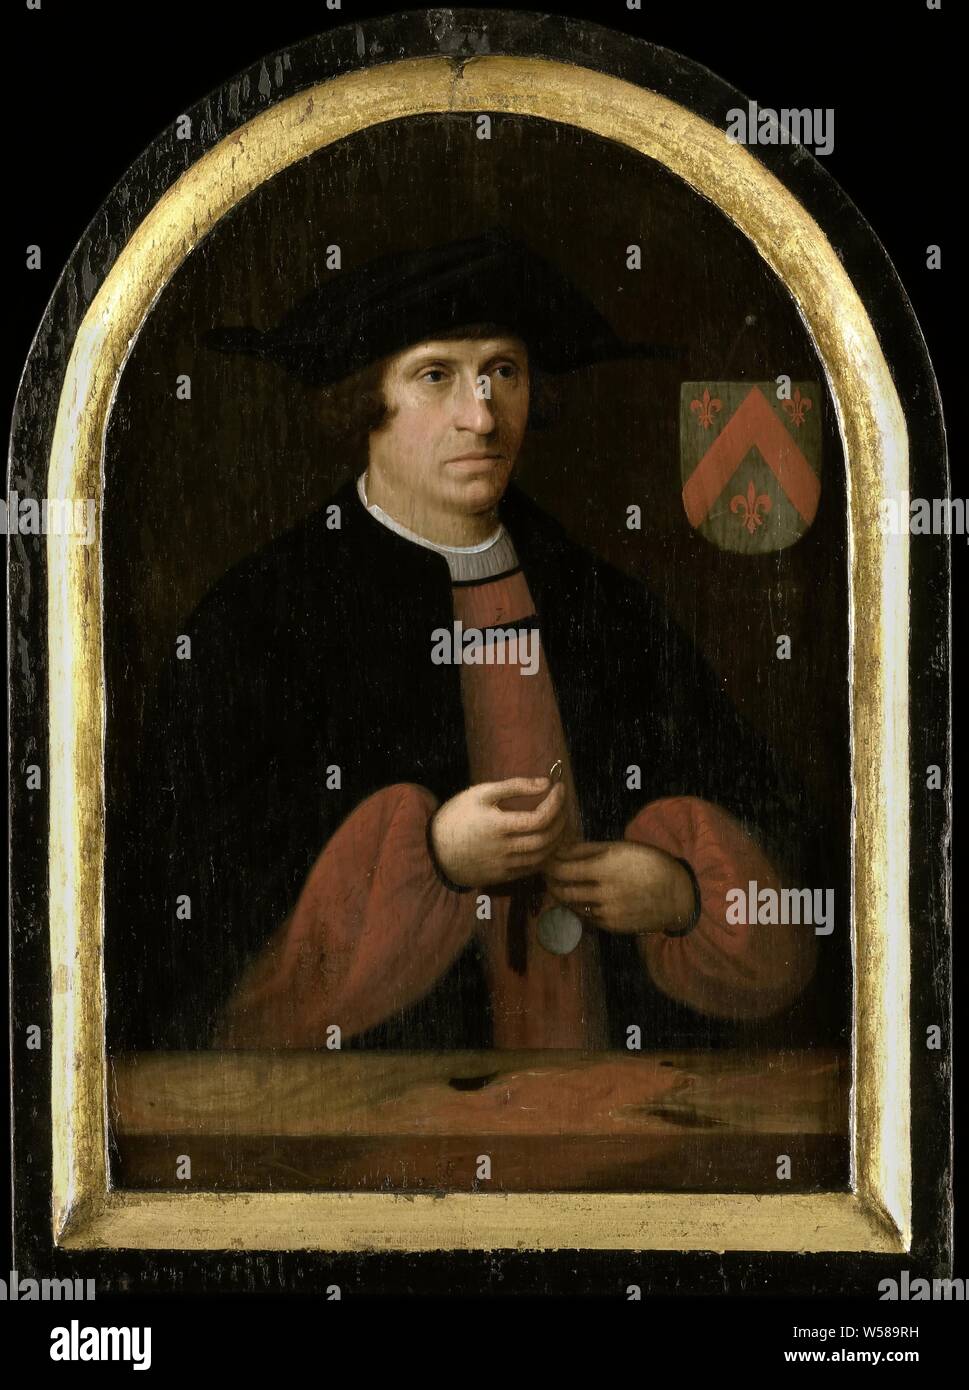 Portrait de Frans van Overrijn Schoterbosch (ch. 1484- ?), Portrait de Frans van Overrijn Schoterbosch (né ca. 1484). Demi-longueur, debout derrière une balustrade, un anneau dans la main droite. Haut à droite le blason de la famille. Peut-être qu'une copie par Cornelis Engelsz. après un exemple inconnu de 1522. Avec liste intégrée. Appartient à un groupe de personnes historiques, portraits, Frans van Overrijn Schoterbosch, Cornelis Engelsz. (Attribué à), nord des Pays-Bas), ch. 1525 et/ou c. 1620, tableau de bord, de la peinture à l'huile (peinture), support : H 39 cm × w 29 cm d 2 cm Banque D'Images